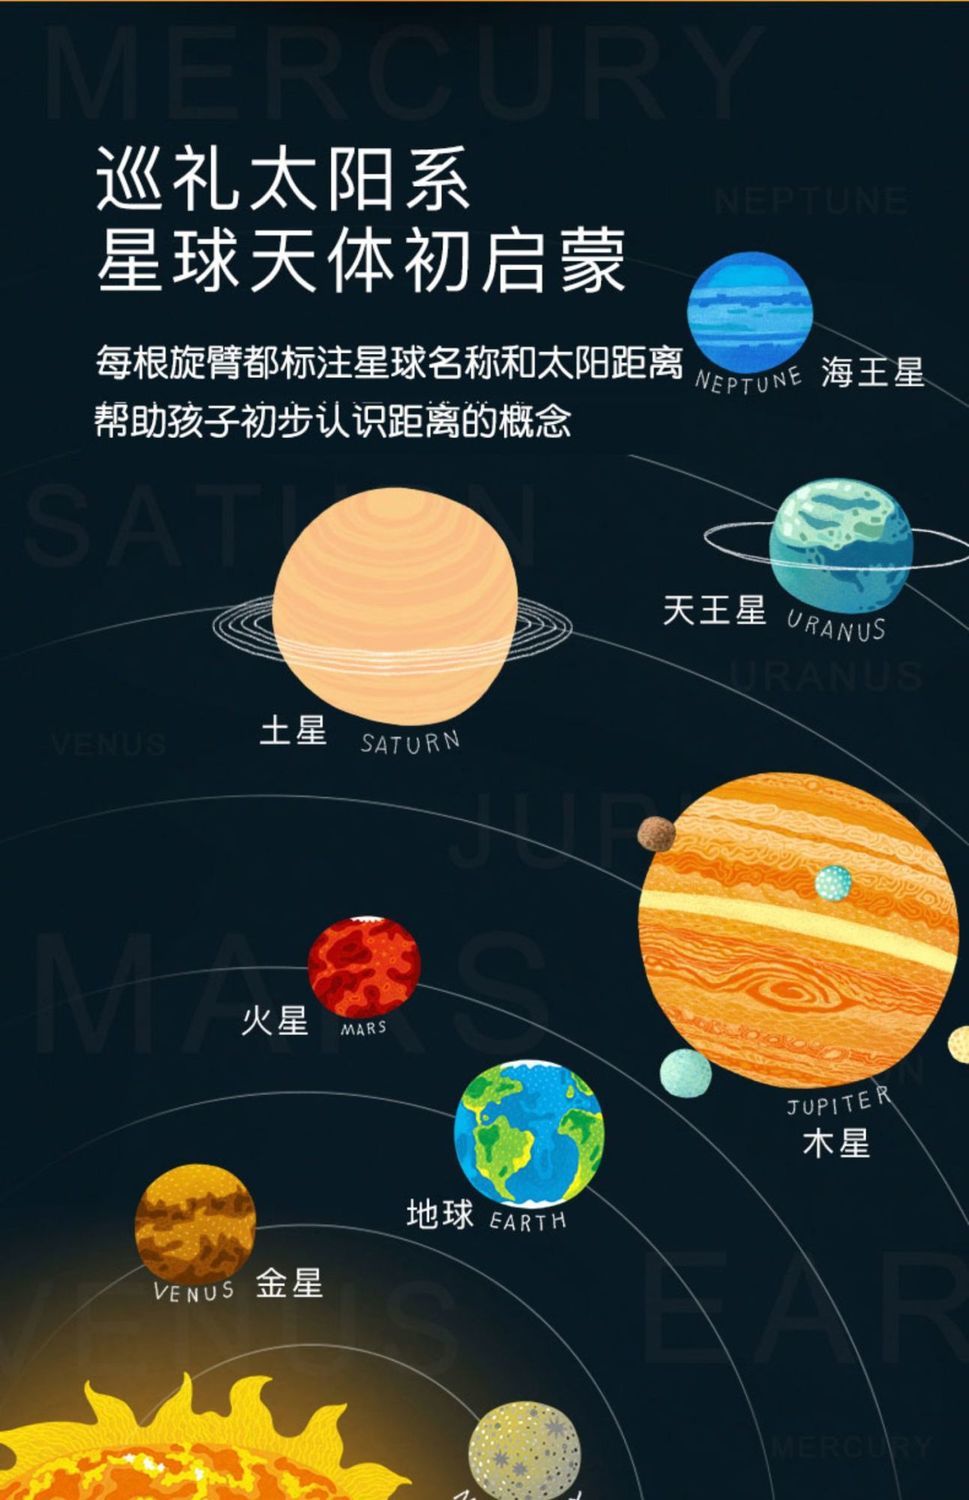 八大行星从大到小排序图片